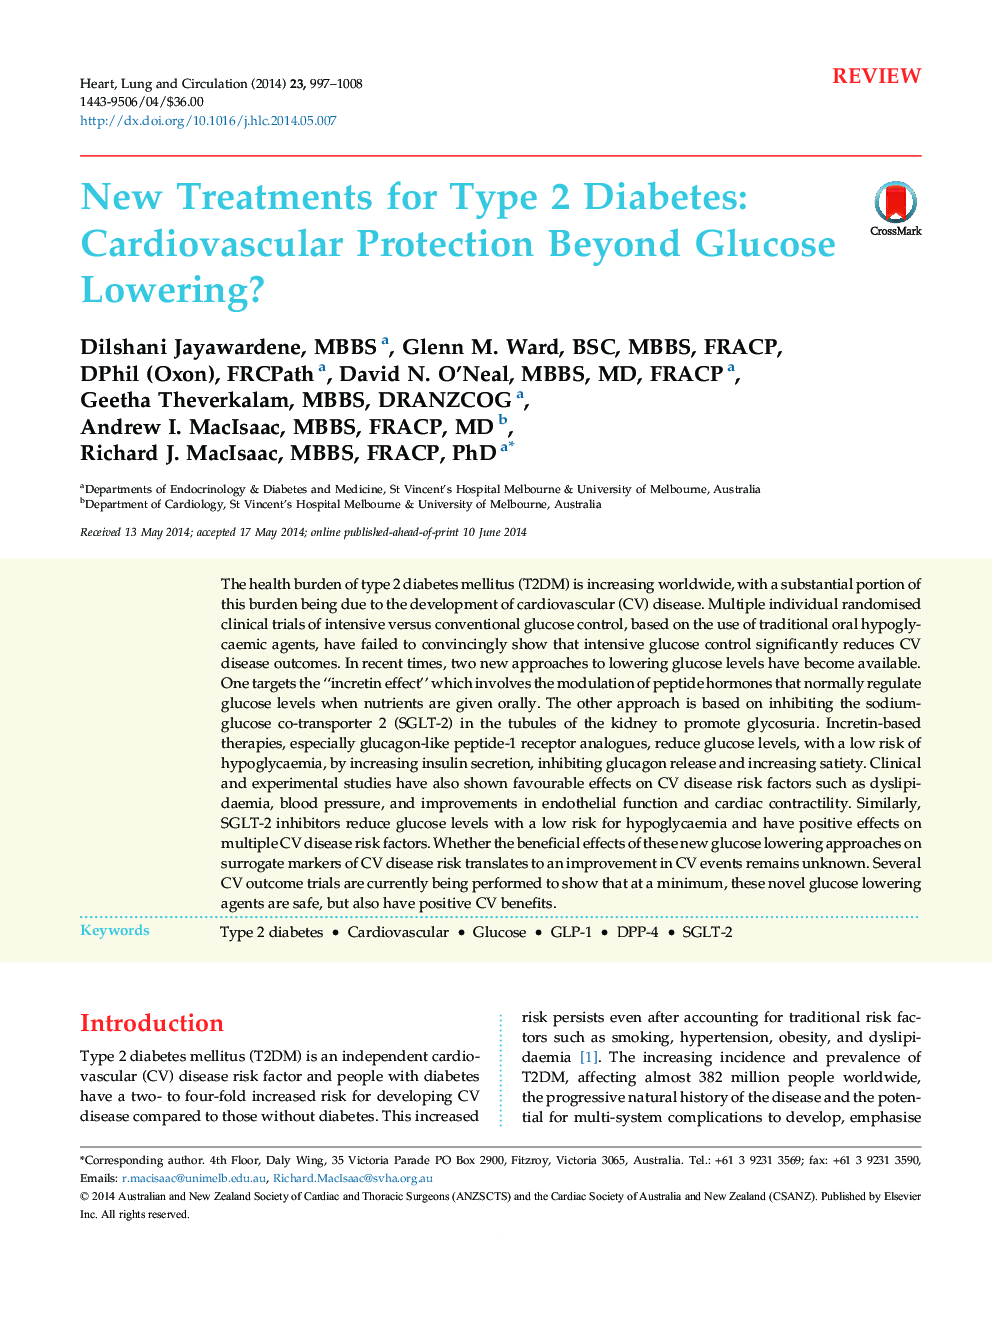 درمان جدید برای دیابت نوع 2: حفاظت از قلب و عروق فراتر از کاهش قند خون؟ 